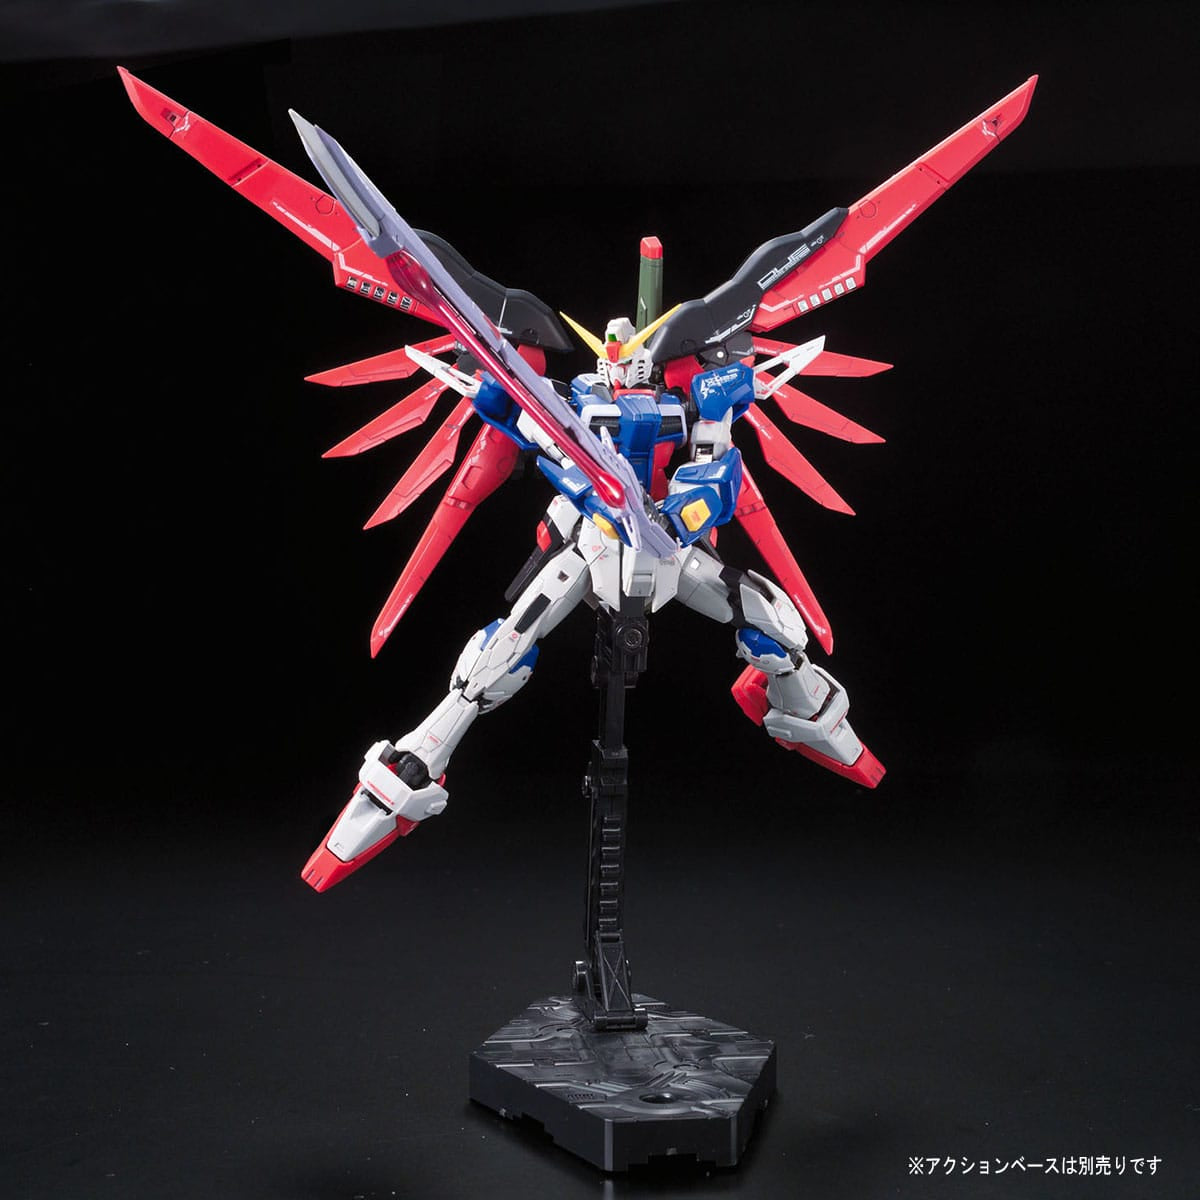 RG 1/144 Destiny Gundam - Bandai - Glacier Hobbies